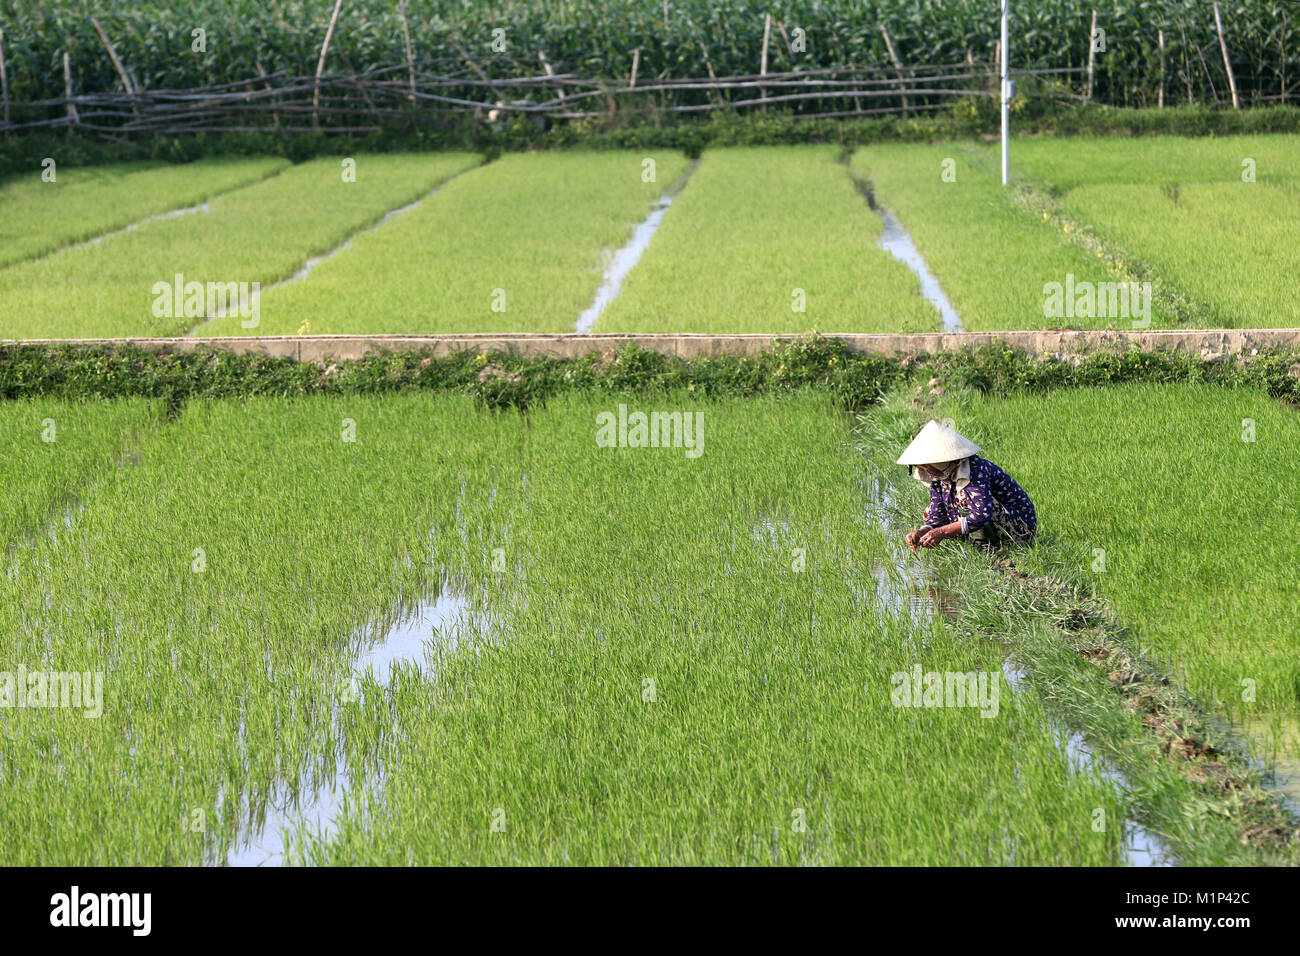 Agriculteur vietnamien travaillant dans son champ de riz le repiquage du riz de jeunes, Hoi An, Vietnam, Indochine, Asie du Sud-Est, l'Asie Banque D'Images